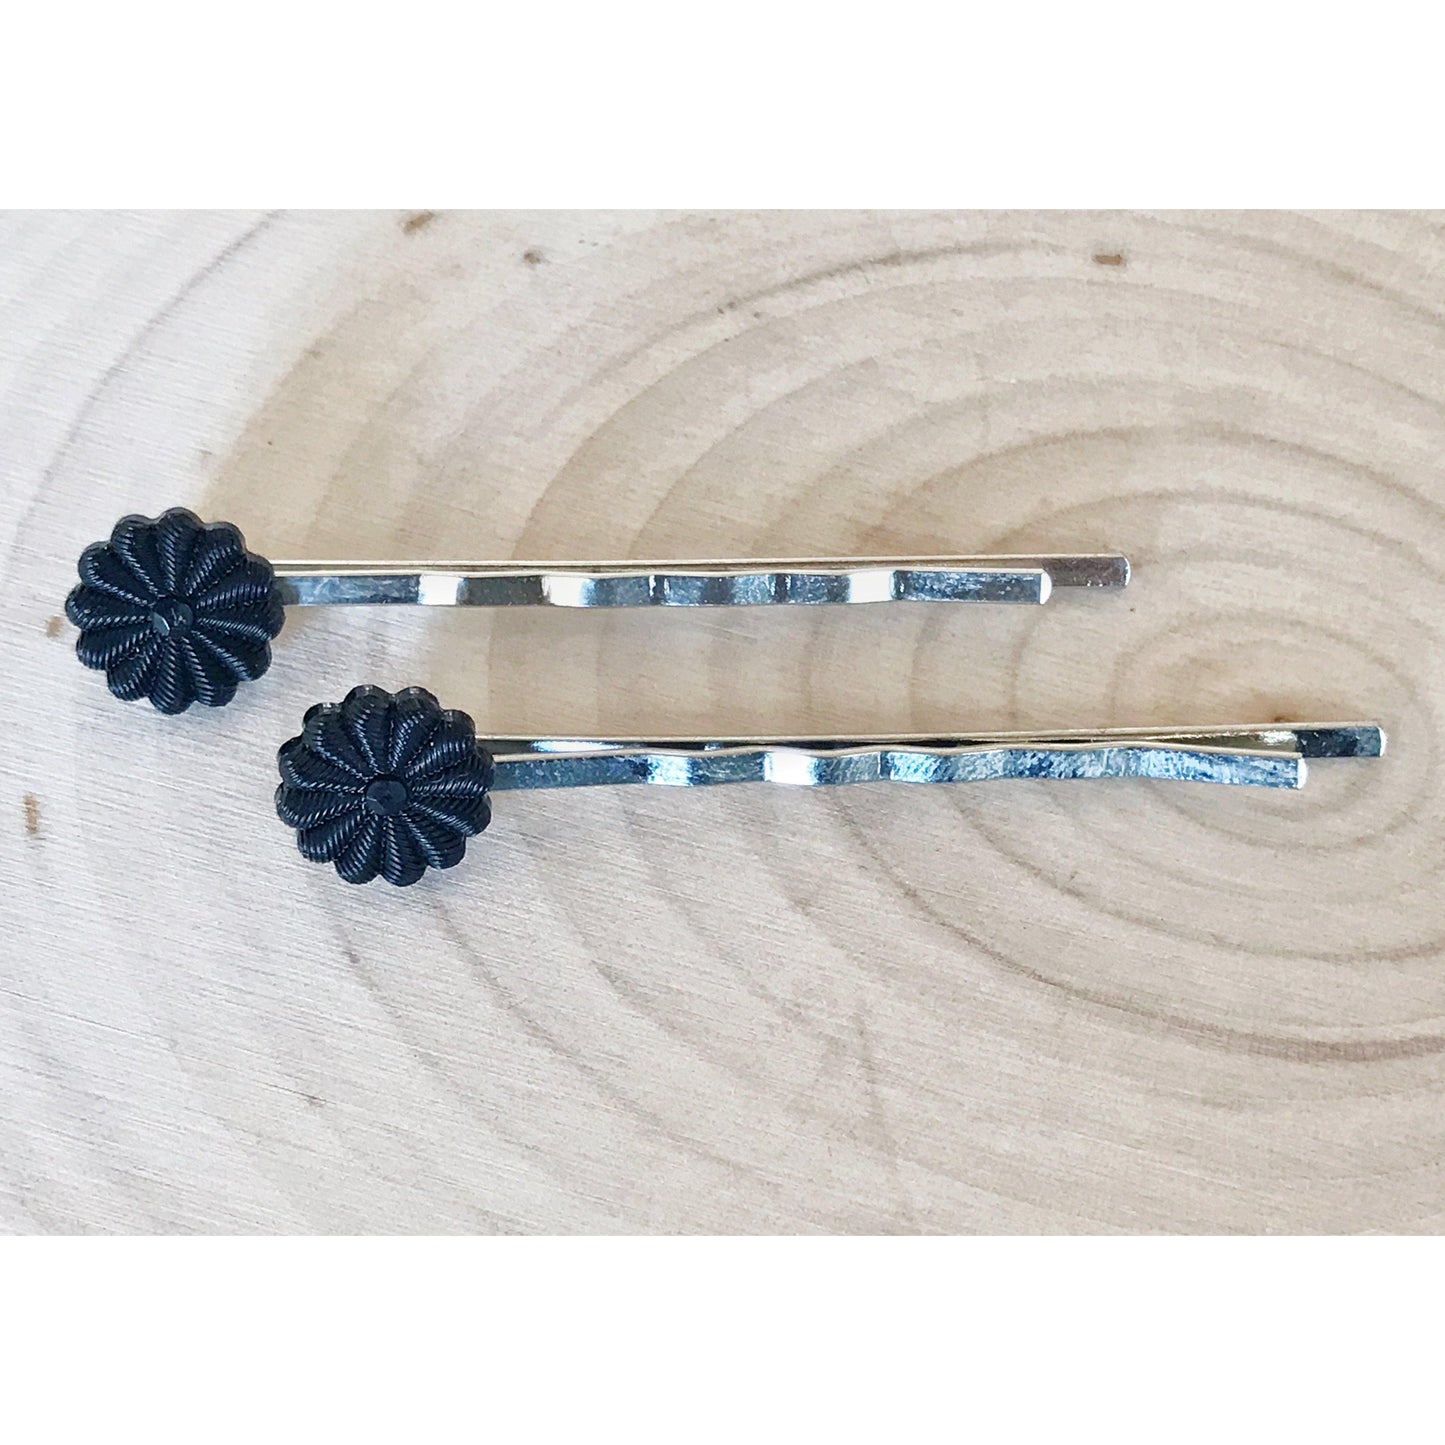 Small Black Flower Hair Pins